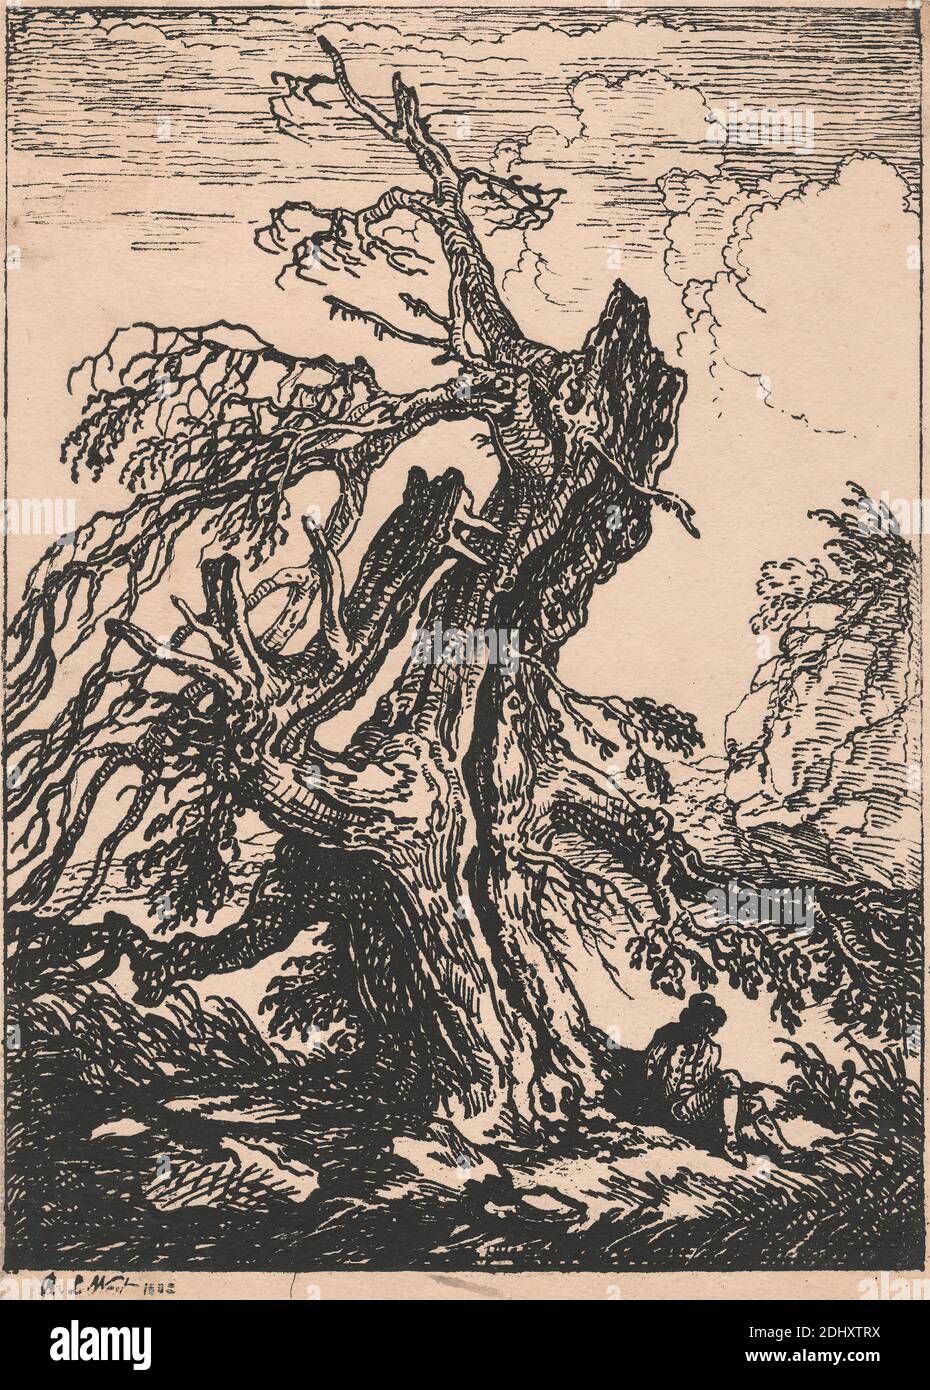 Estudio de un árbol, Raphael Lamar West, 1769–1850, British, 1802, publicado en 1807 Foto de stock